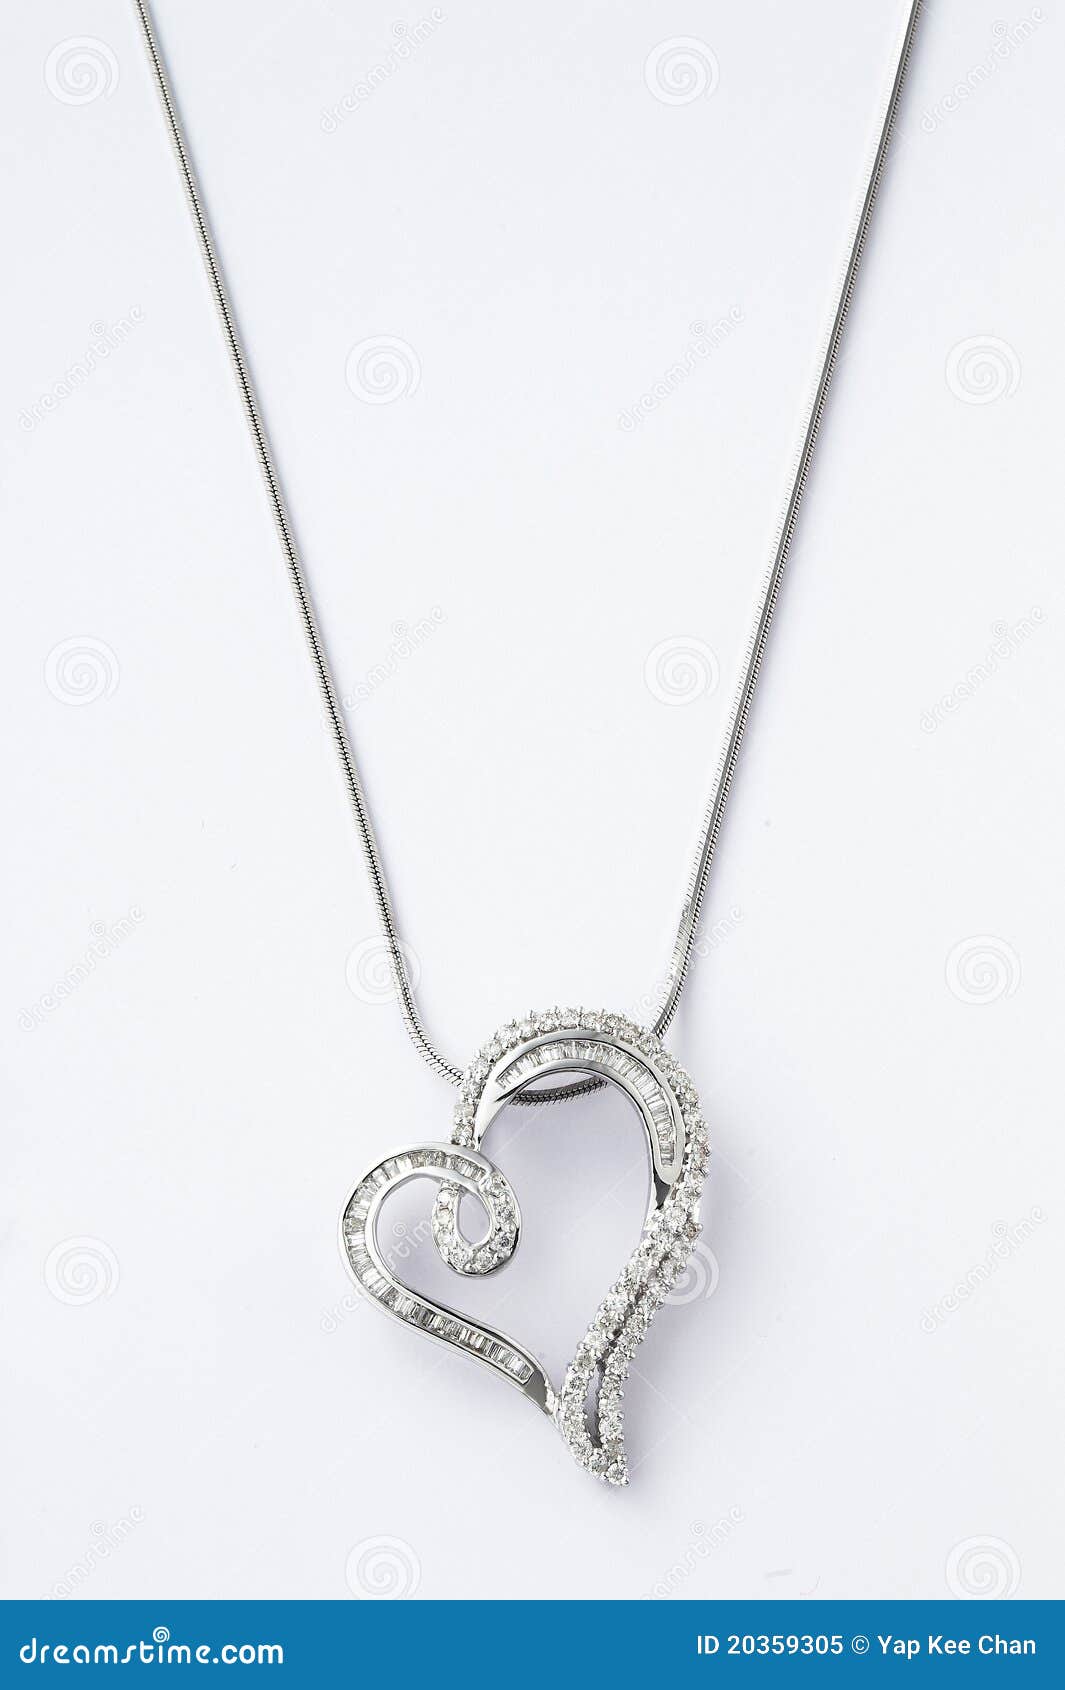 heart-d necklace